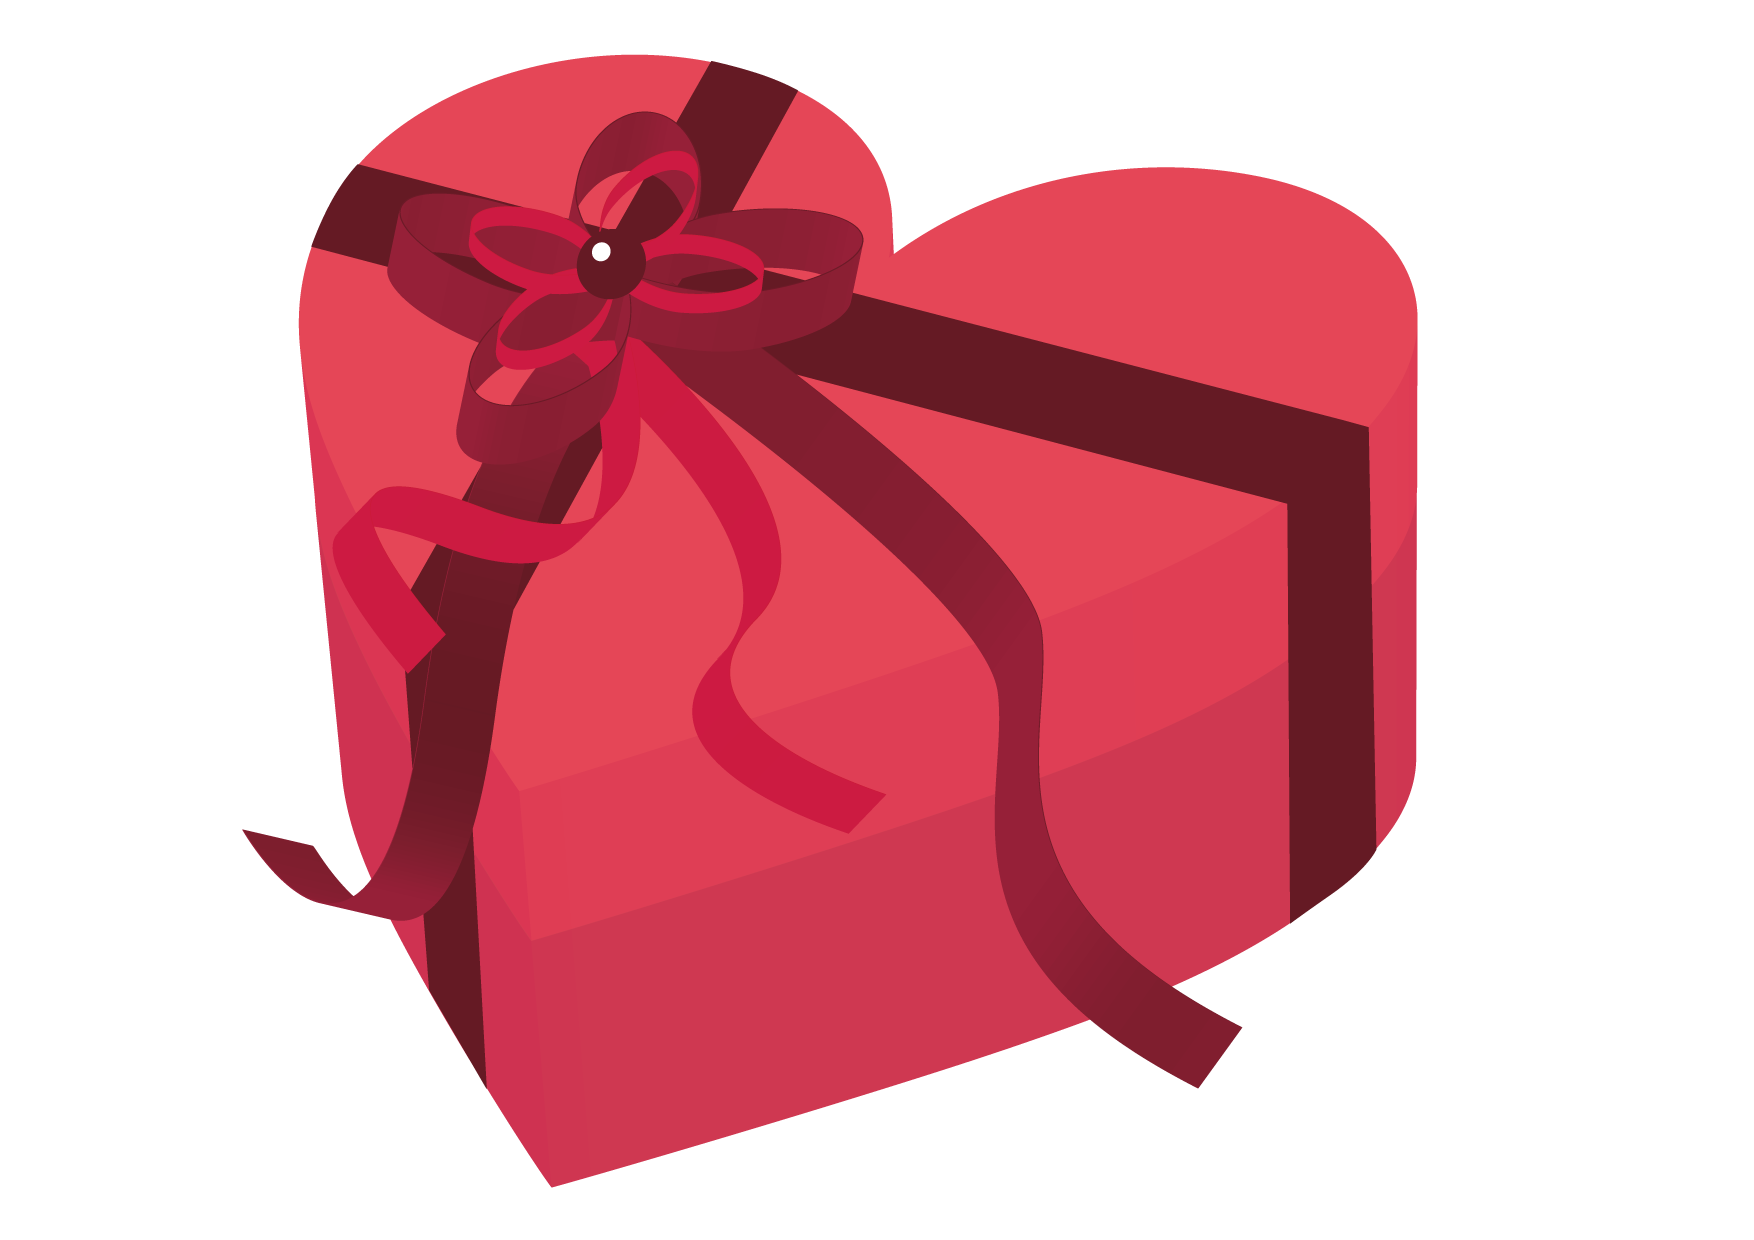 可愛いイラスト無料 バレンタイン ハート ピンク 箱 Free Illustration Valentine Heart Pink Box 公式 イラスト素材サイト イラストダウンロード